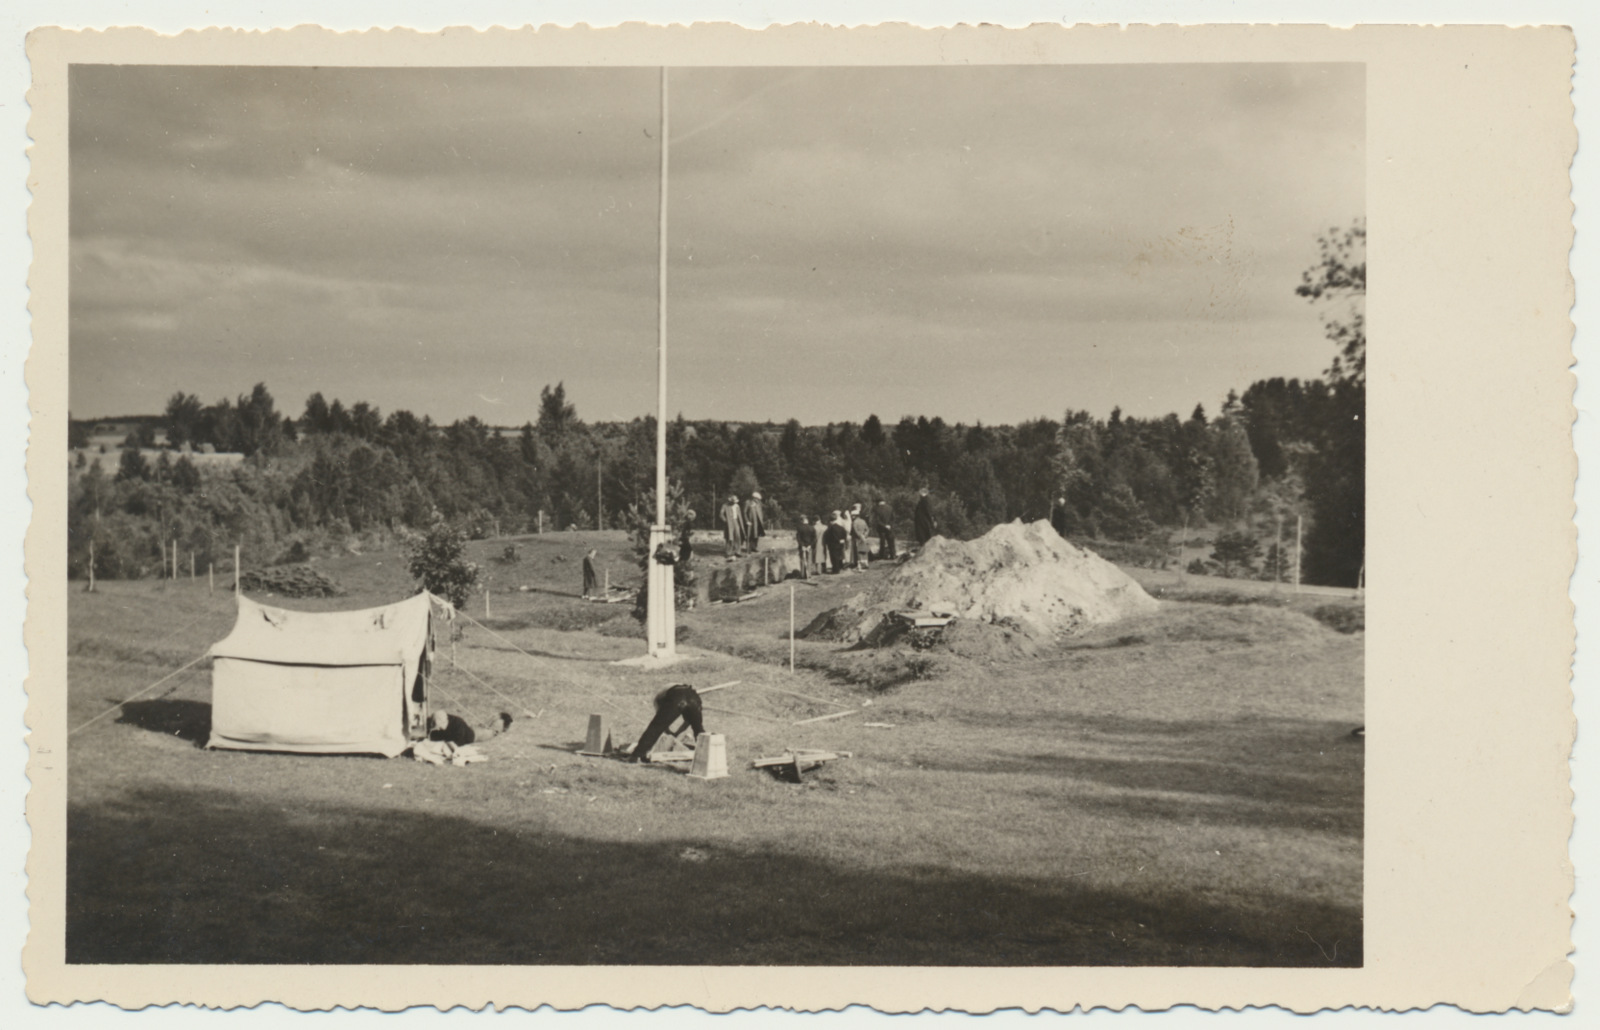 foto, Viljandimaa, Lõhavere linnamägi, arheoloogilised väljakaevamised, üldvaade, 1937, foto A. Kukk